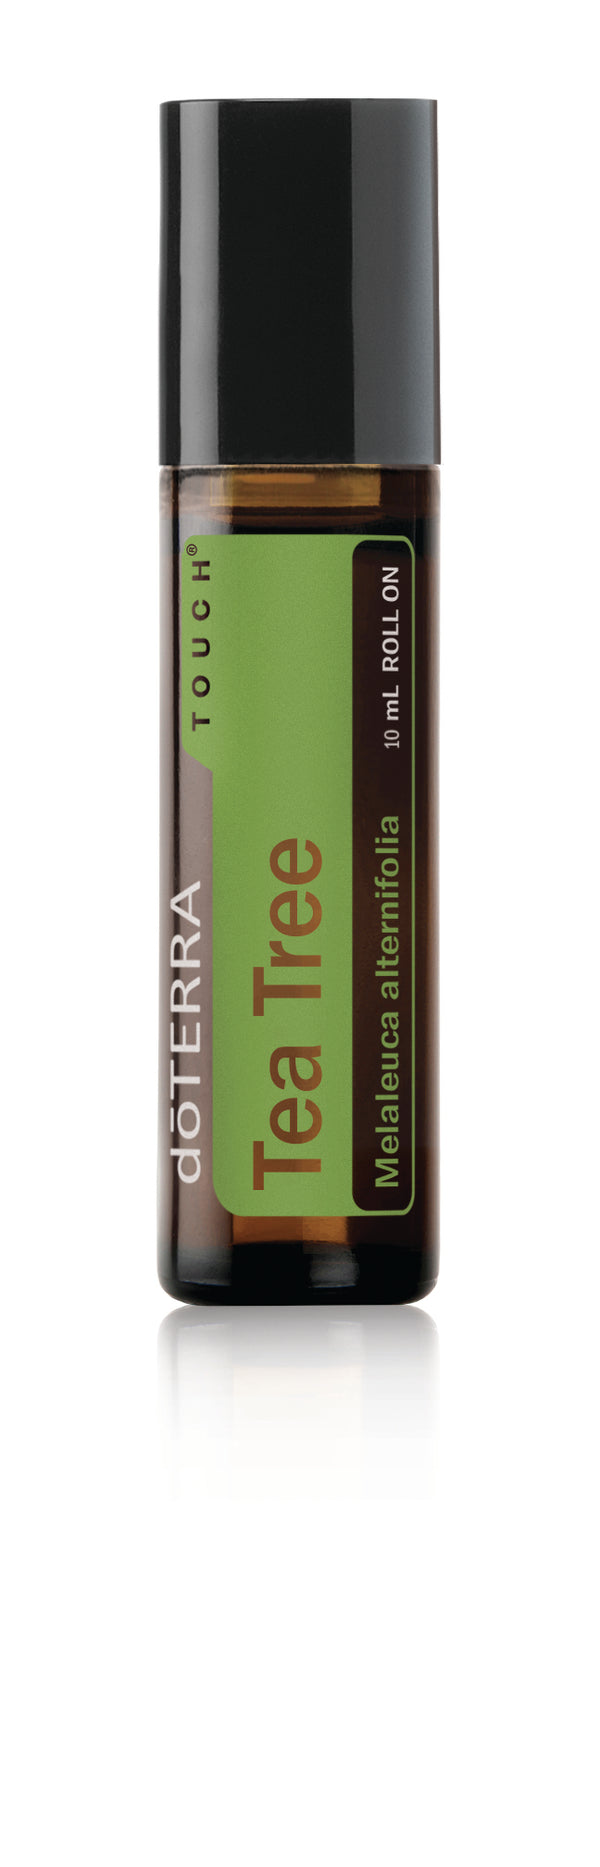 doTERRA Tea Tree Touch Oil  Melaleuca alternifolia